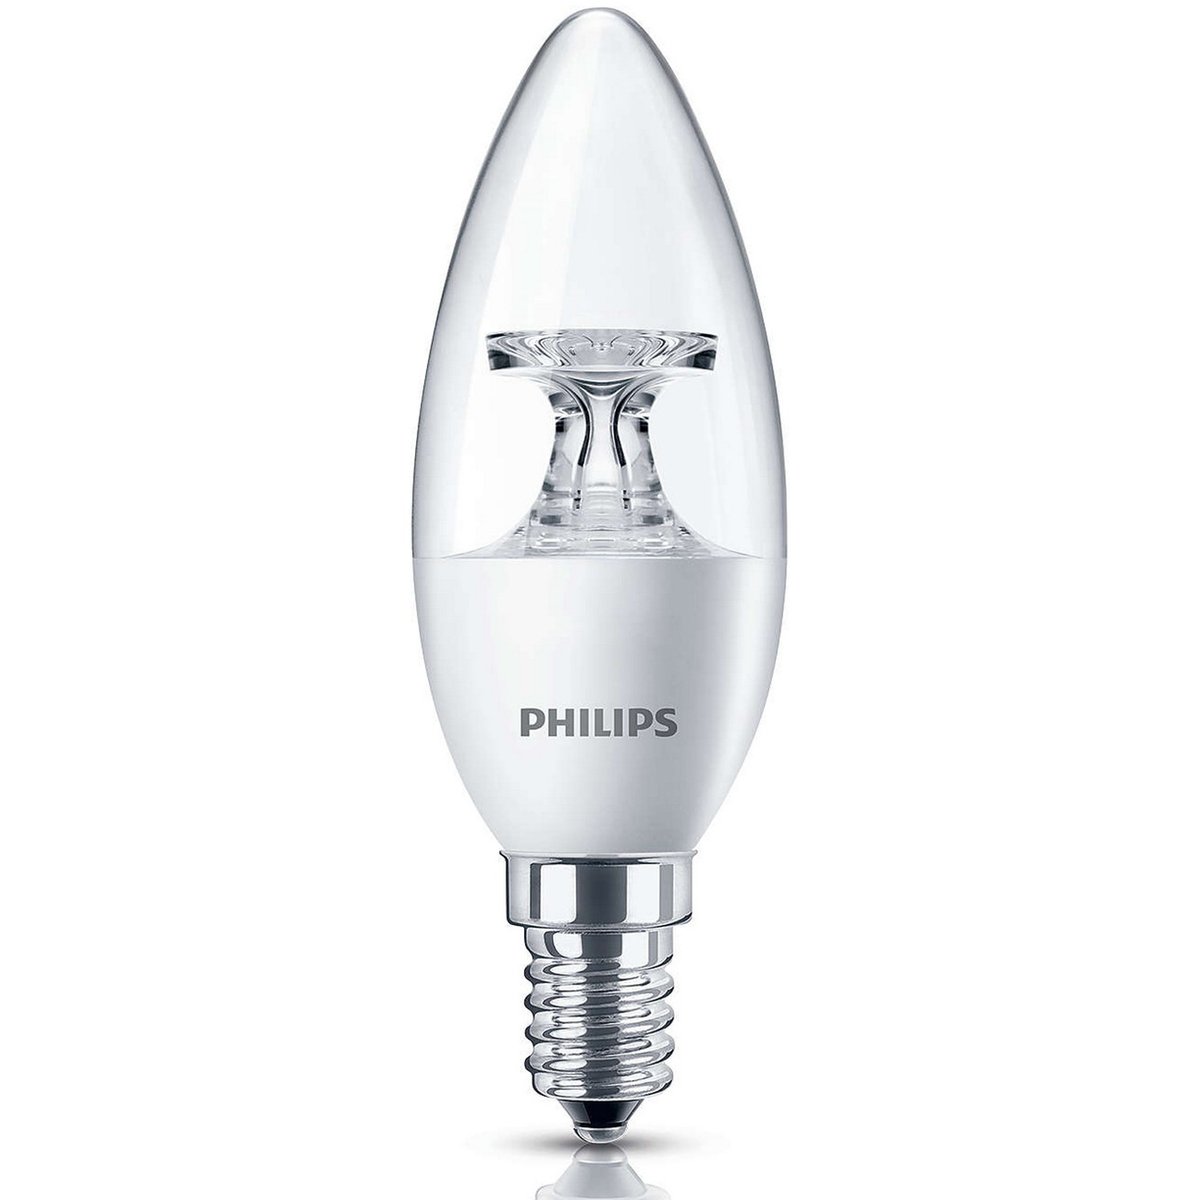 Ambassadeur delicatesse kust Philips LED Candle Bulb 5.5-40W E14 2700K 220-240V Online at Best Price |  LED Bulb | Lulu UAE